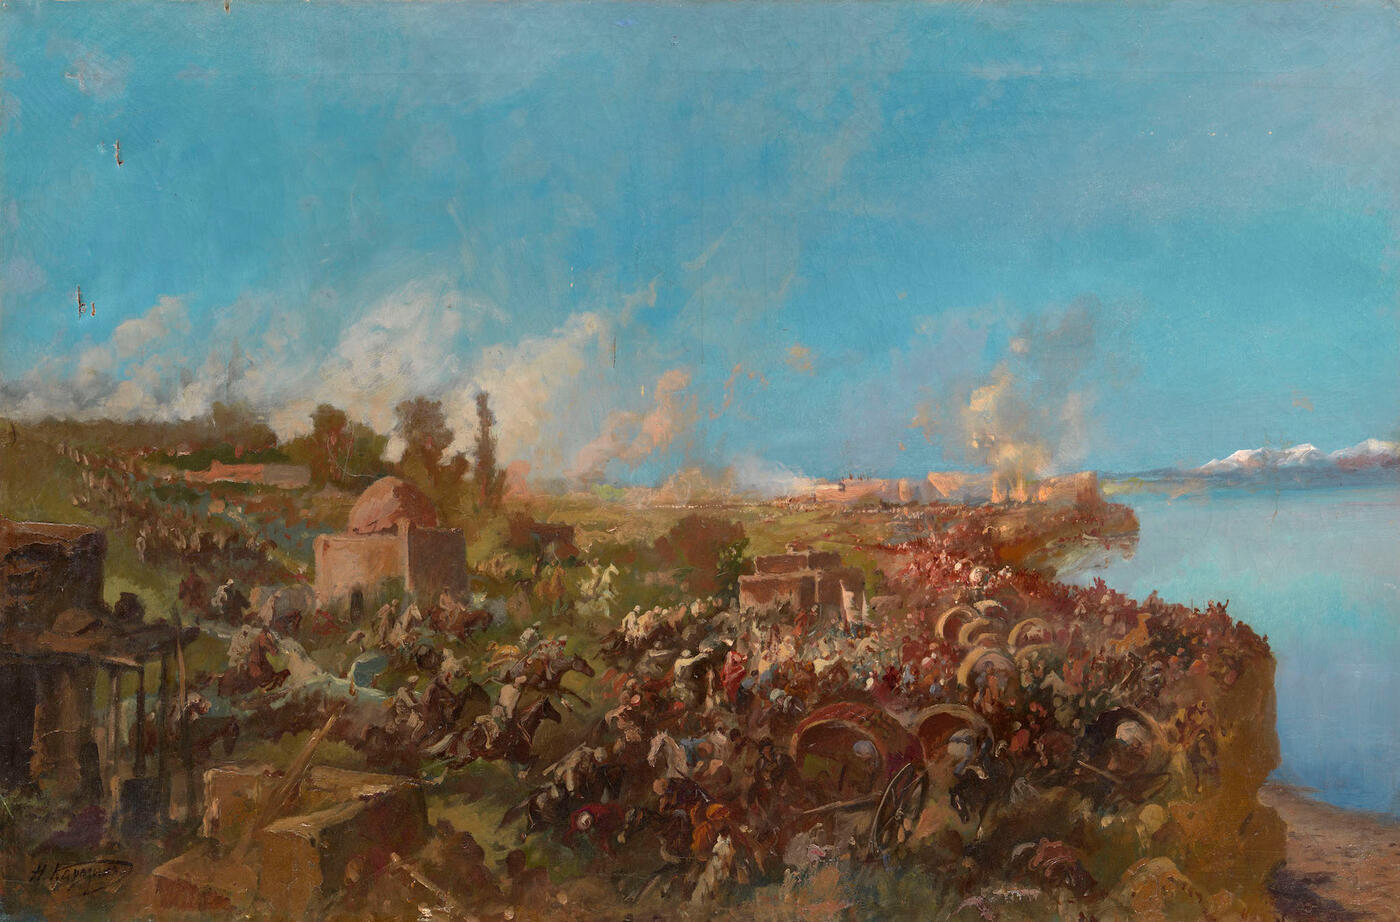 Battle of Makhram in Turkestan